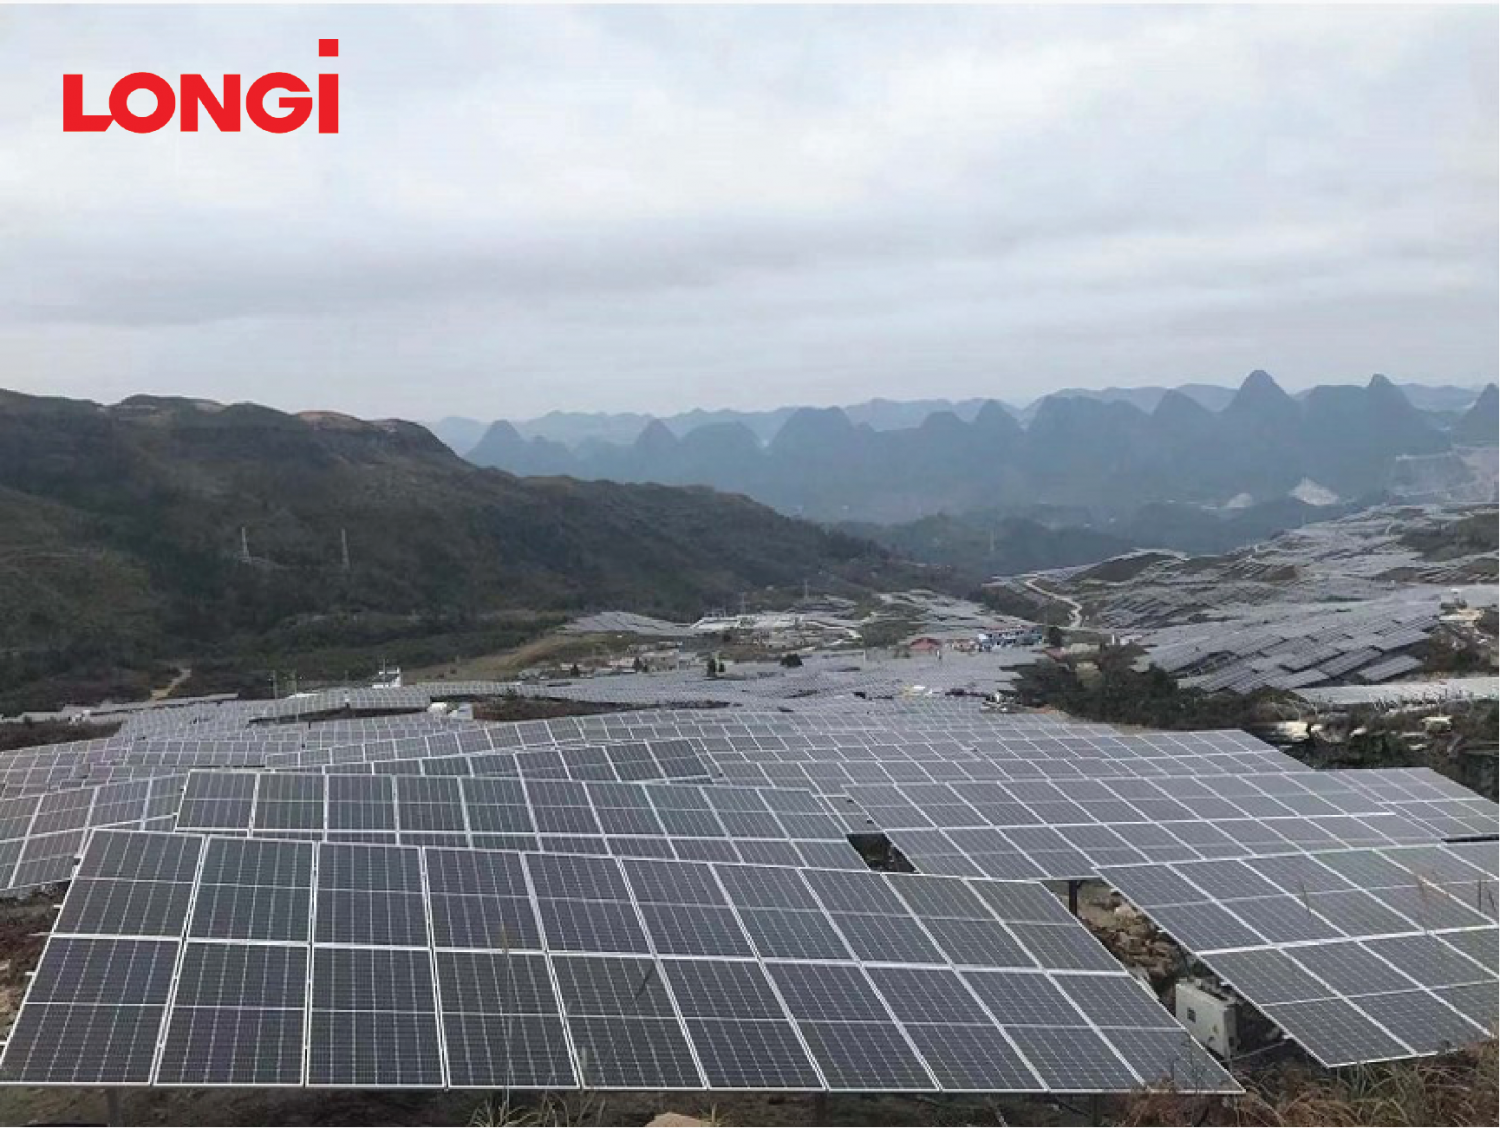 Mô-đun của LONGi được sử dụng tại nhà máy điện mặt trời công suất 105W tại tỉnh Quý Châu (Trung Quốc) đã tiết kiệm 6% chi phí lắp đặt cho chủ đầu tư